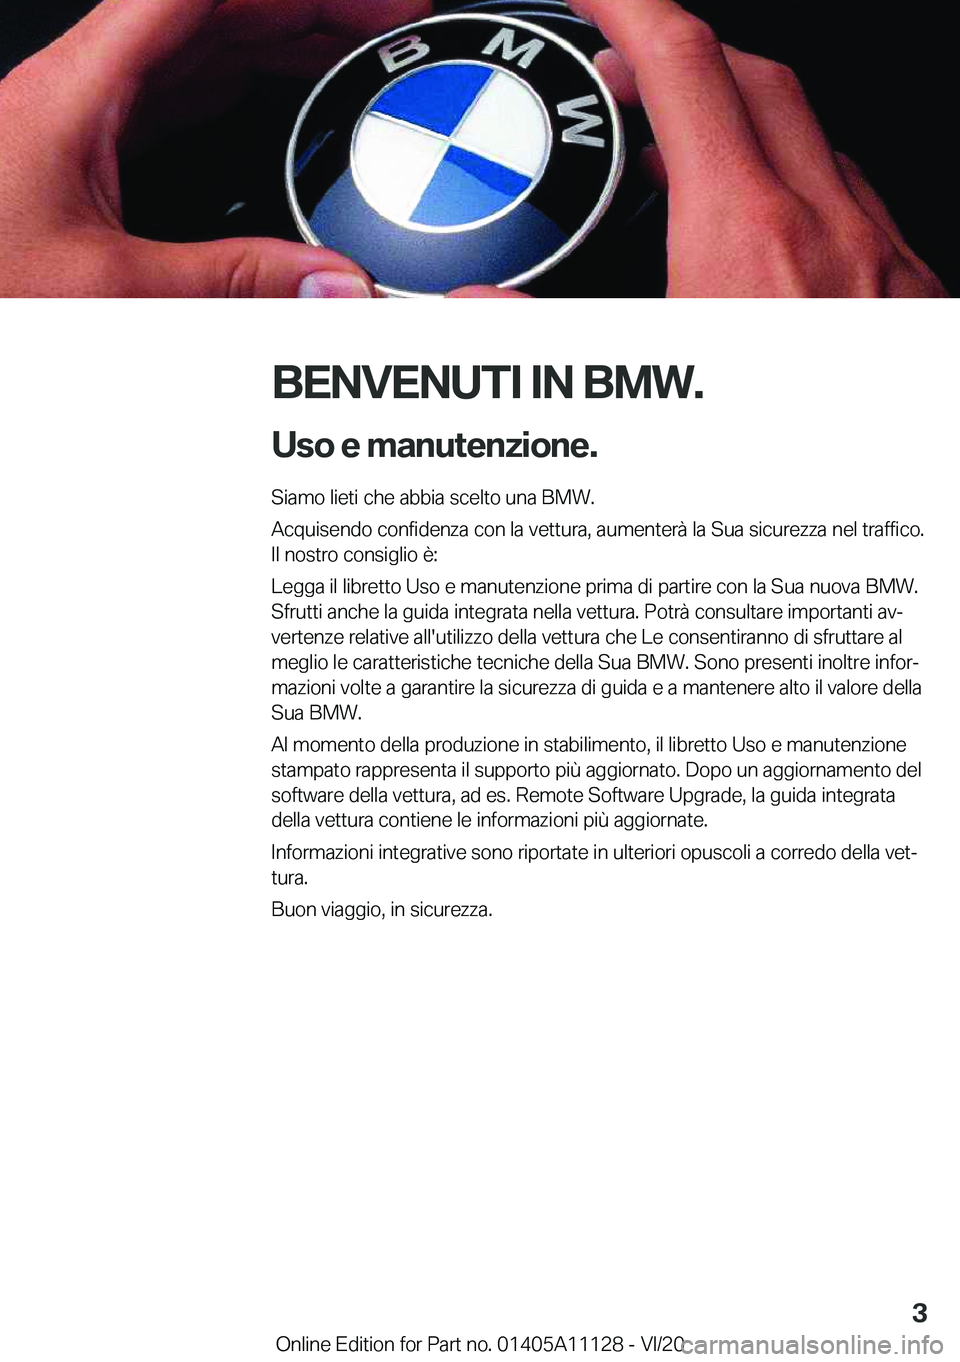 BMW 8 SERIES COUPE 2021  Libretti Di Uso E manutenzione (in Italian) �B�E�N�V�E�N�U�T�I��I�N��B�M�W�.�U�s�o��e��m�a�n�u�t�e�n�z�i�o�n�e�.
�S�i�a�m�o��l�i�e�t�i��c�h�e��a�b�b�i�a��s�c�e�l�t�o��u�n�a��B�M�W�.
�A�c�q�u�i�s�e�n�d�o��c�o�n�f�i�d�e�n�z�a��c�o�n�